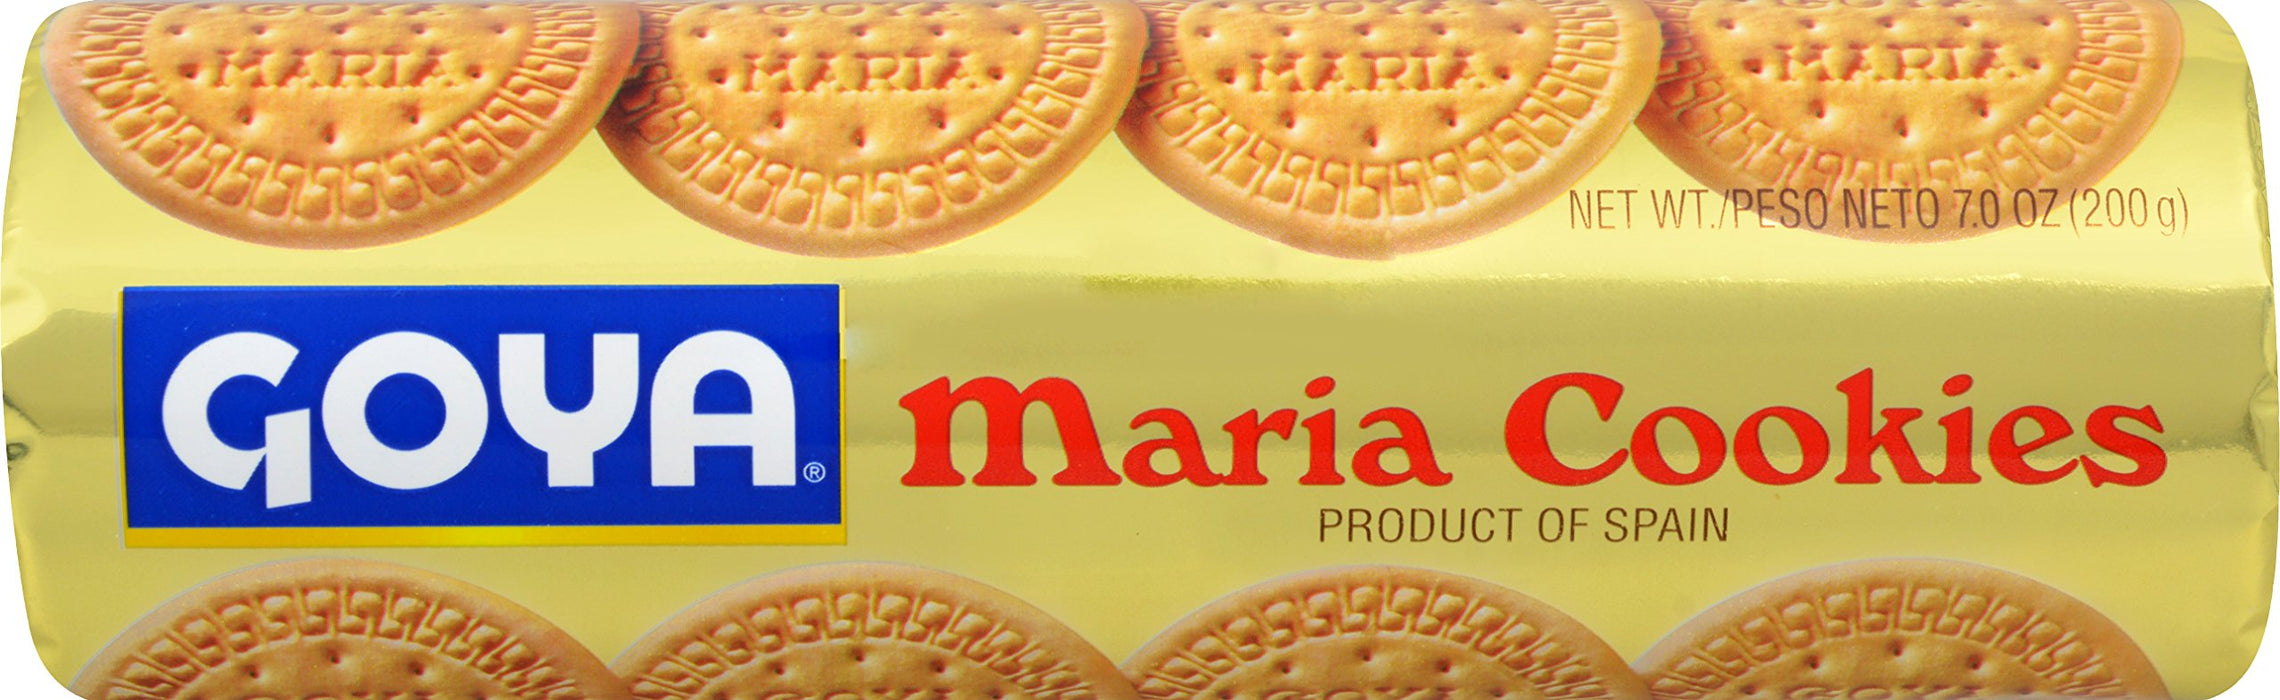 Goya Maria Cookies 200 gms